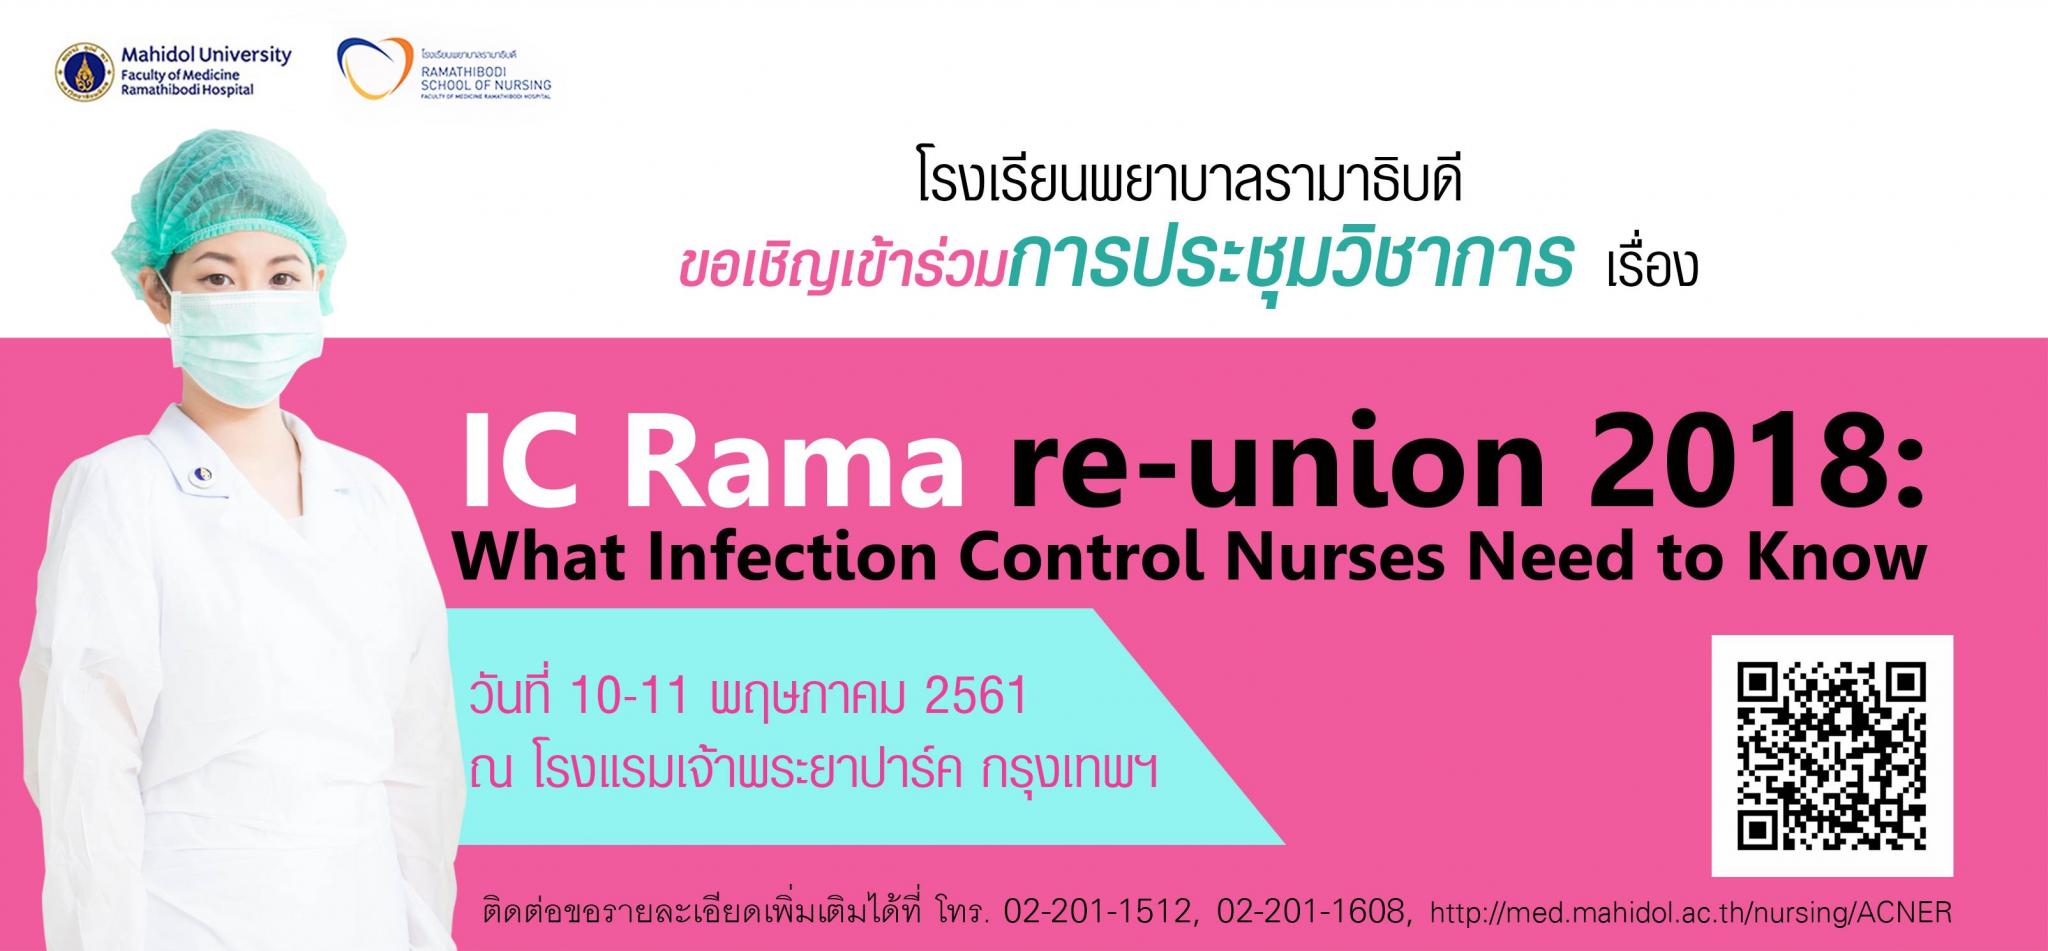 ขอเชิญเข้าร่วมการประชุมวิชาการ เรื่อง IC Rama re-union 2018: What Infection Control Nurses Need to Know